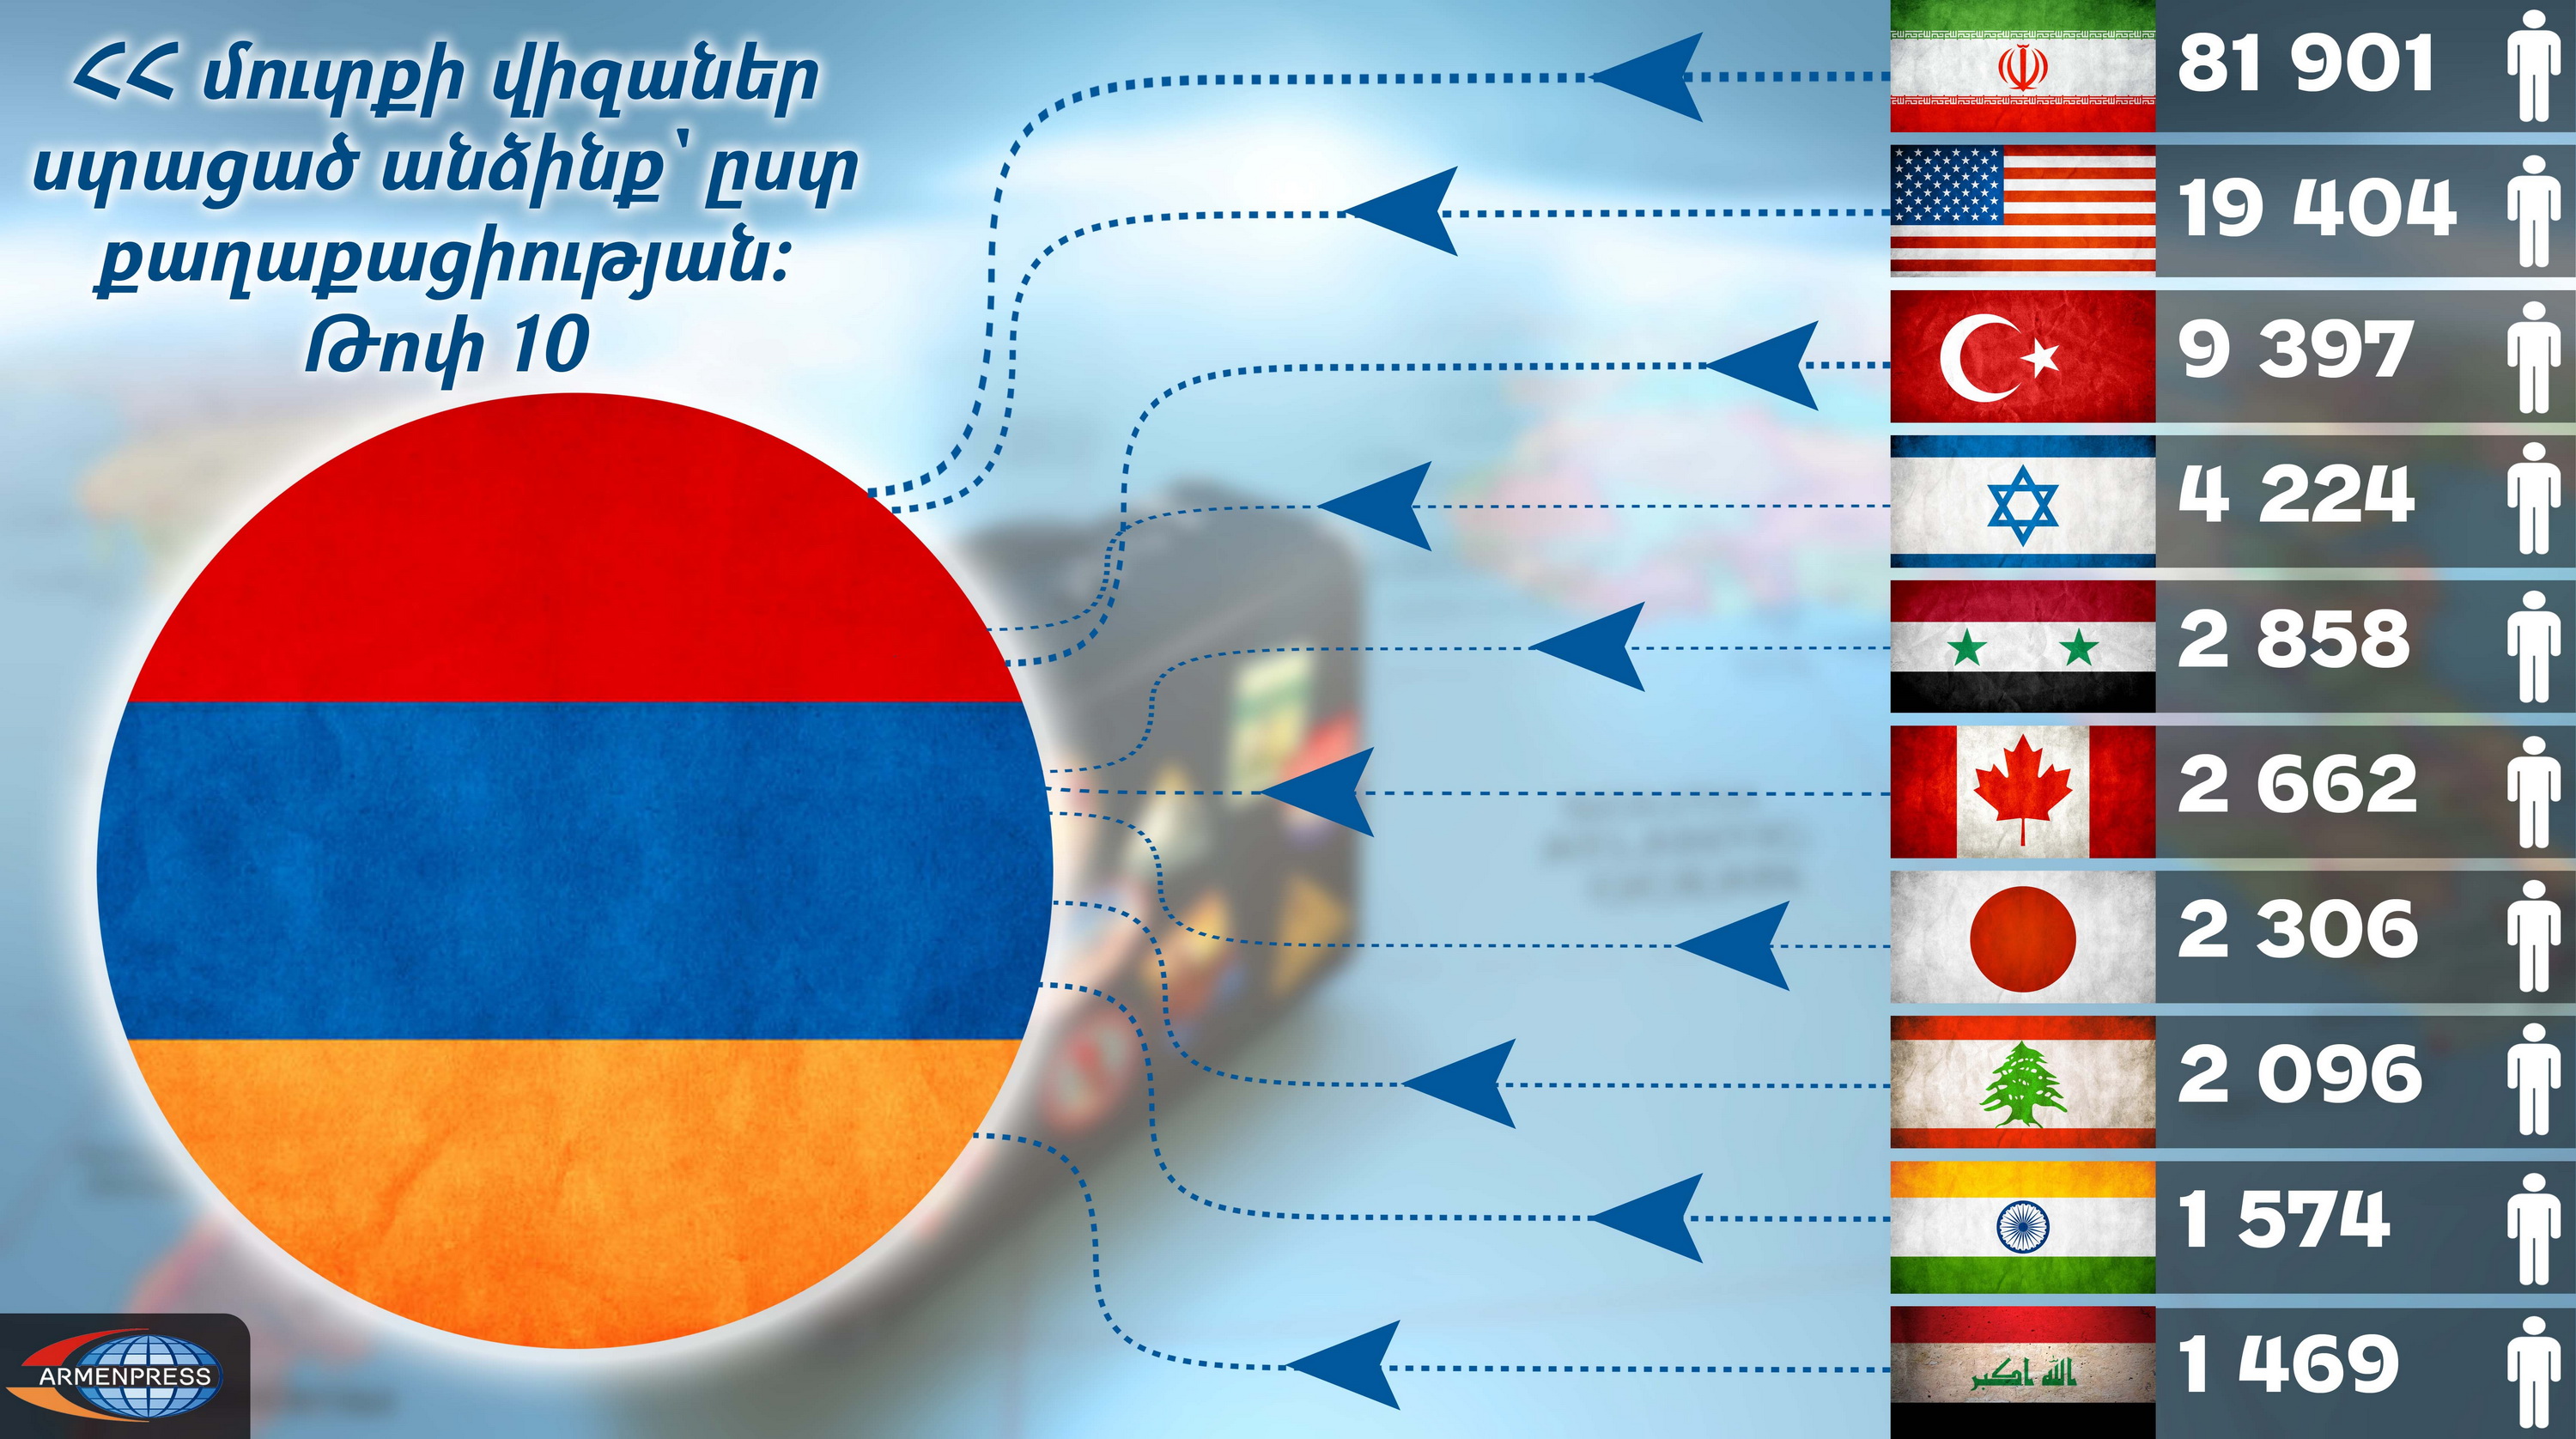 Лица, получившие въездные визы в Армению по странам гражданства: инфографика